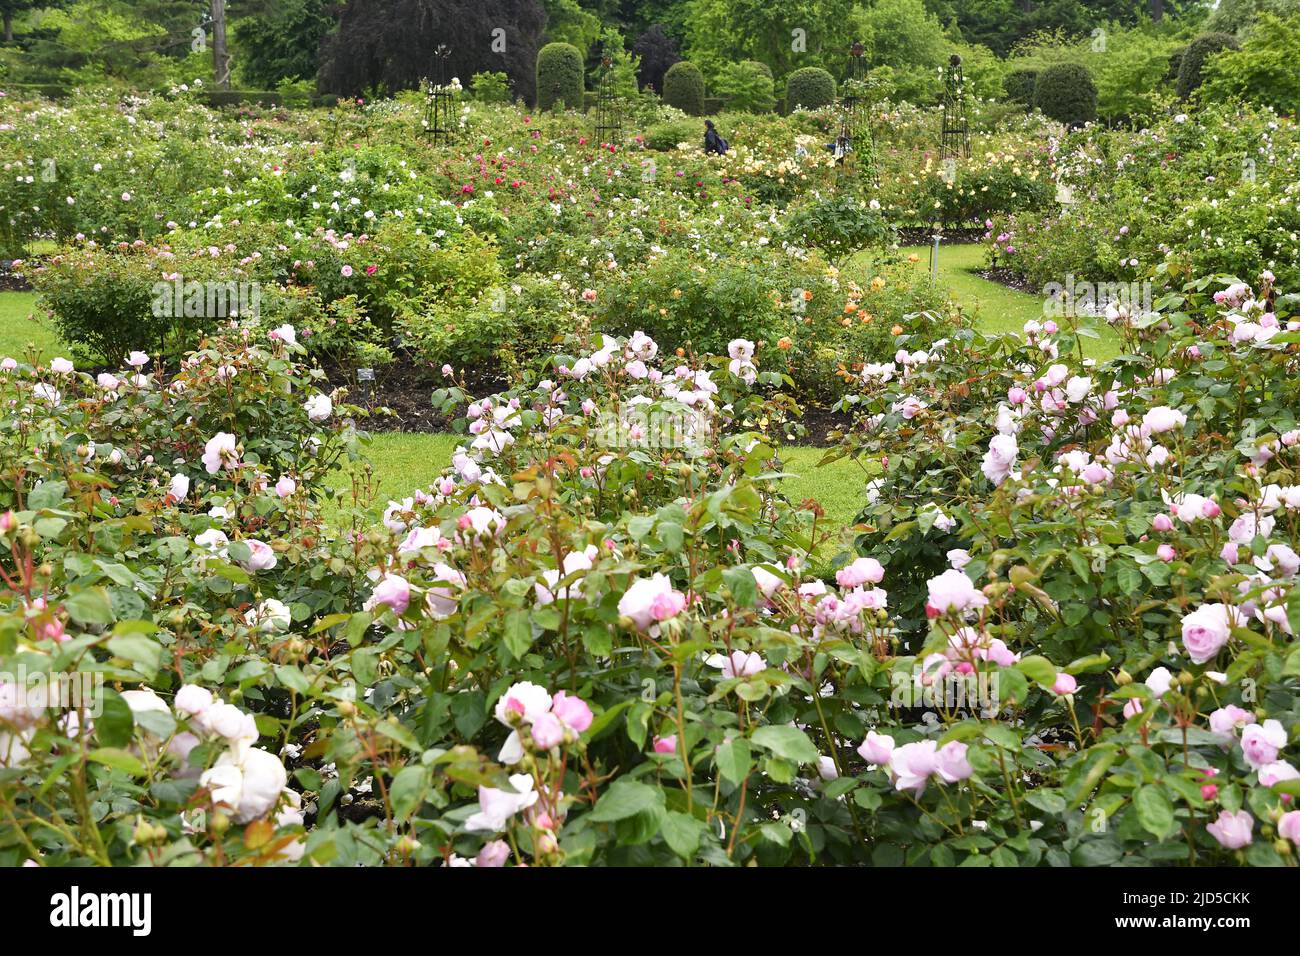 Rose garden in spring, Royal Botanic Gardens Kew London UK. Stock Photo